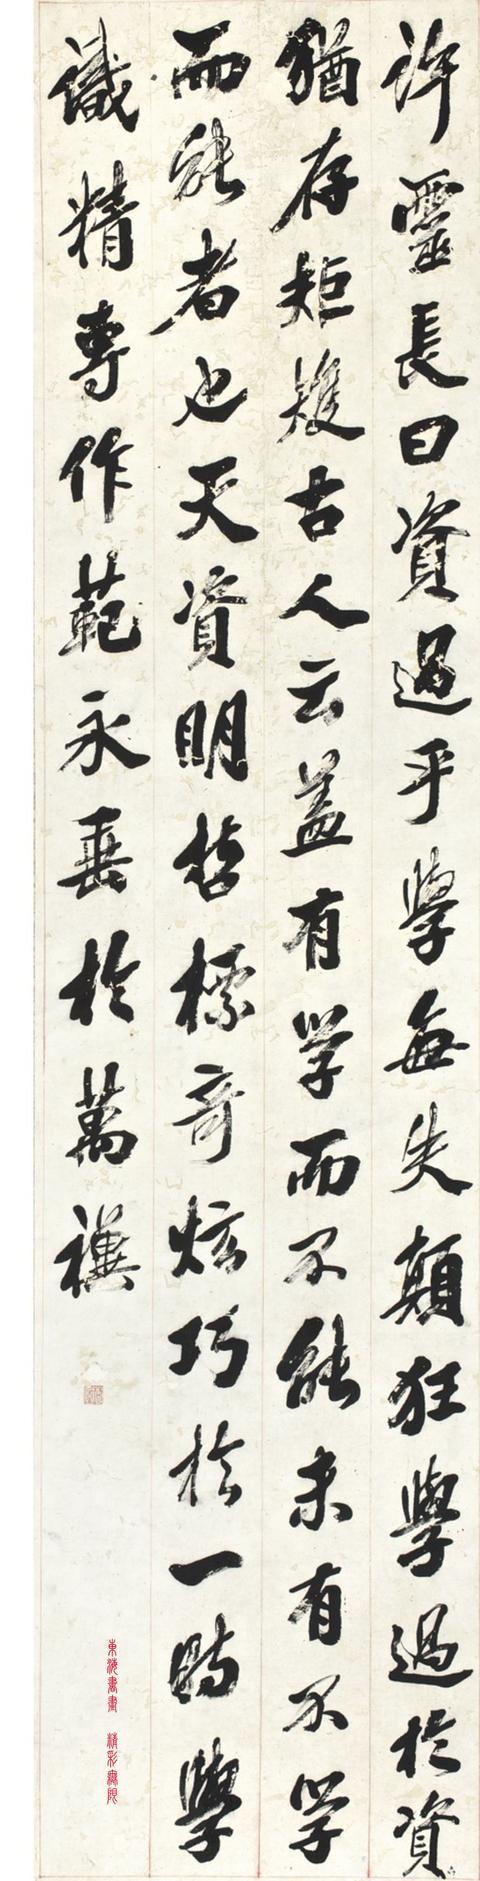 清代诗人、书法家、藏书家 吴荣光 1842年作行书四屏 水墨纸本